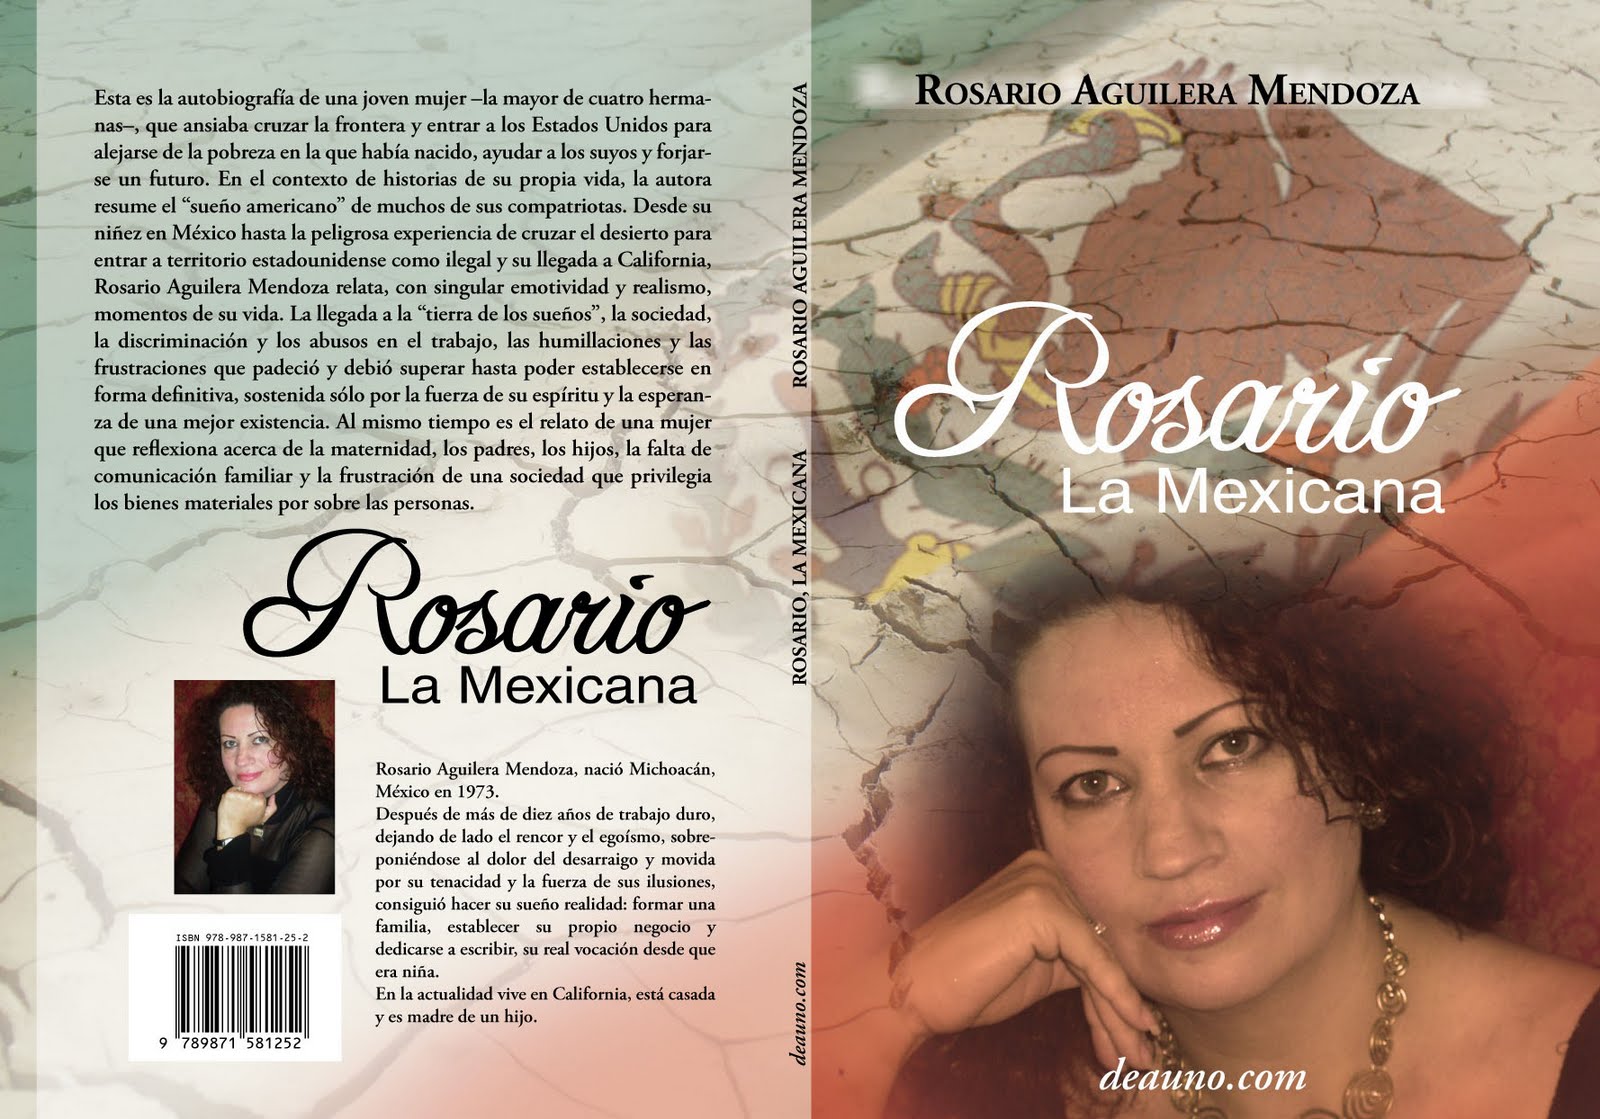 Rosario La Mexicana Rosario La Mexicana Rosario Aguilera Mendoza